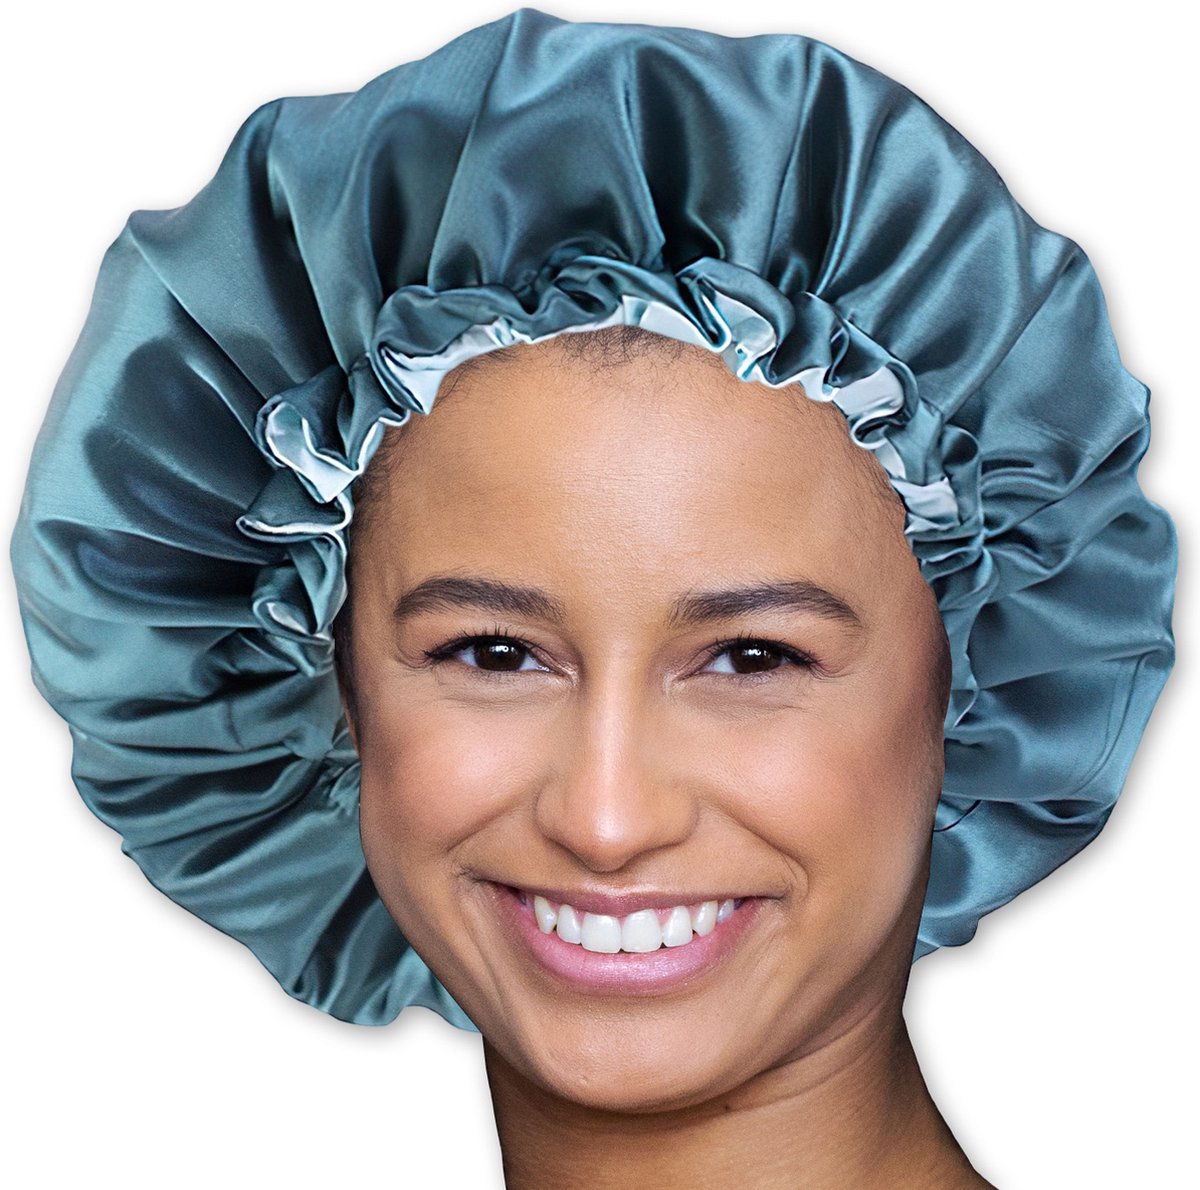 Bonnet van Satijn AfricanFabs® / Satin bonnet / Satijnen slaapmuts / Haar bonnet van Satijn / Nachtmuts voor krullen - Groen